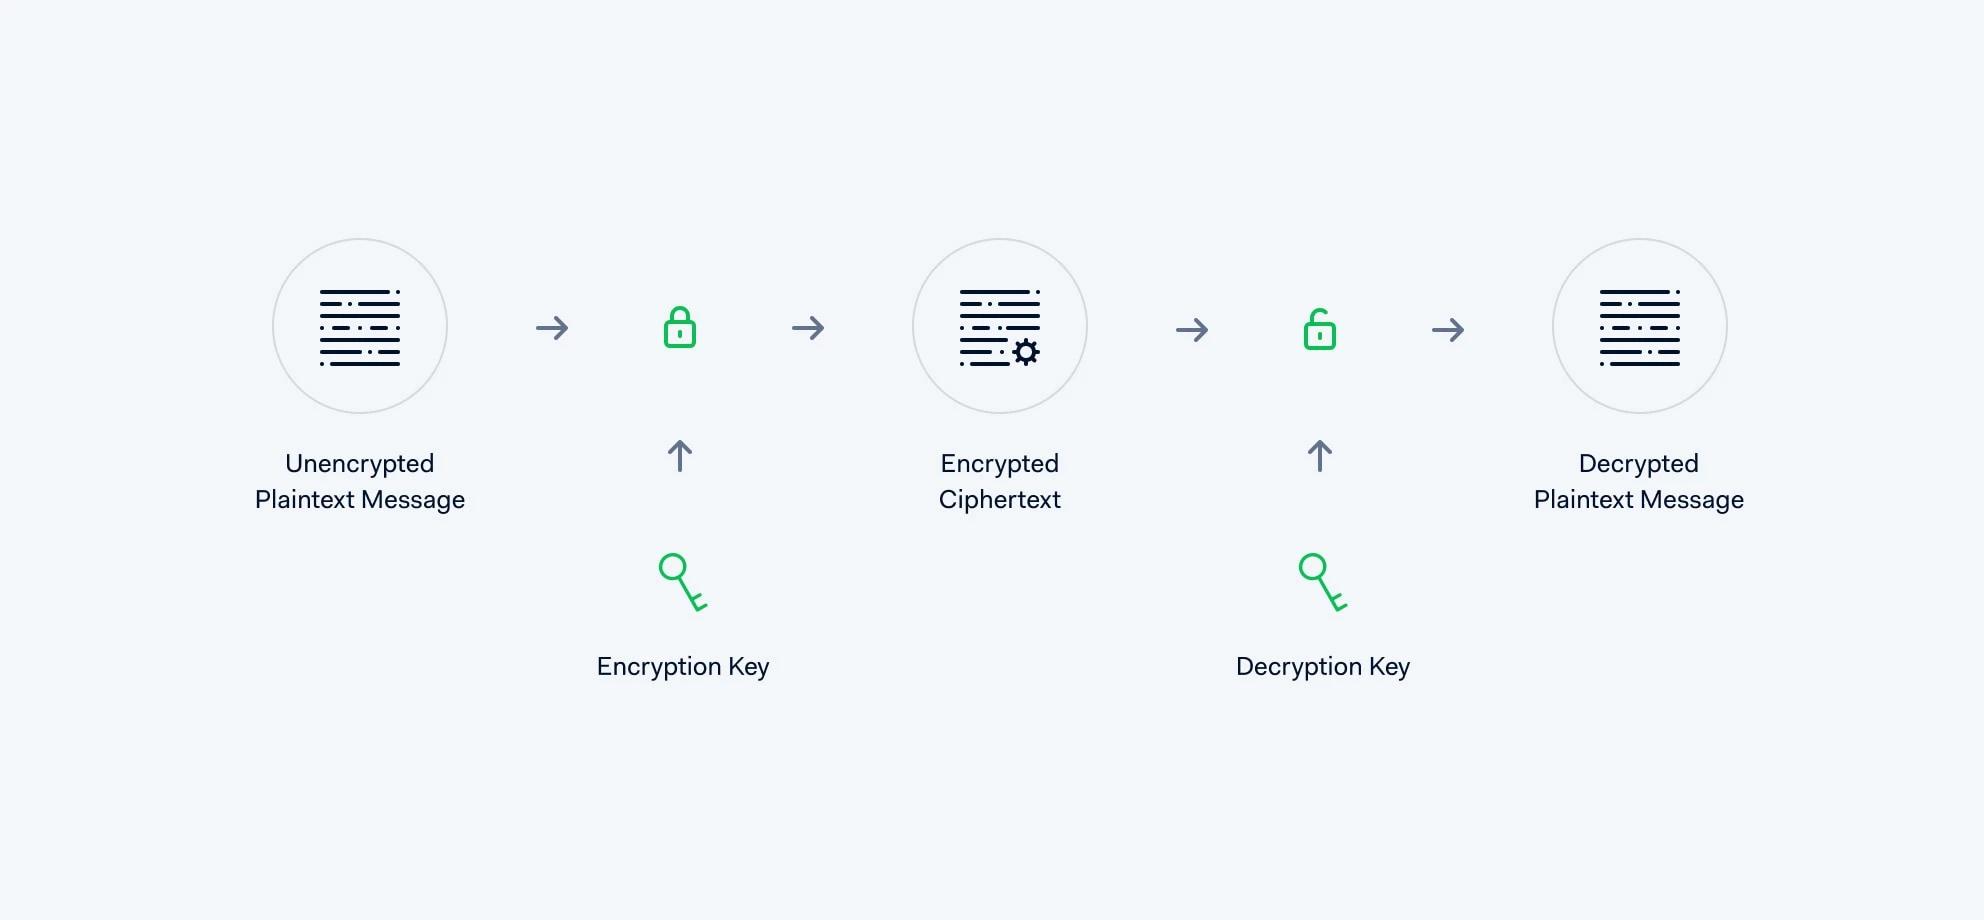 The encryption flow